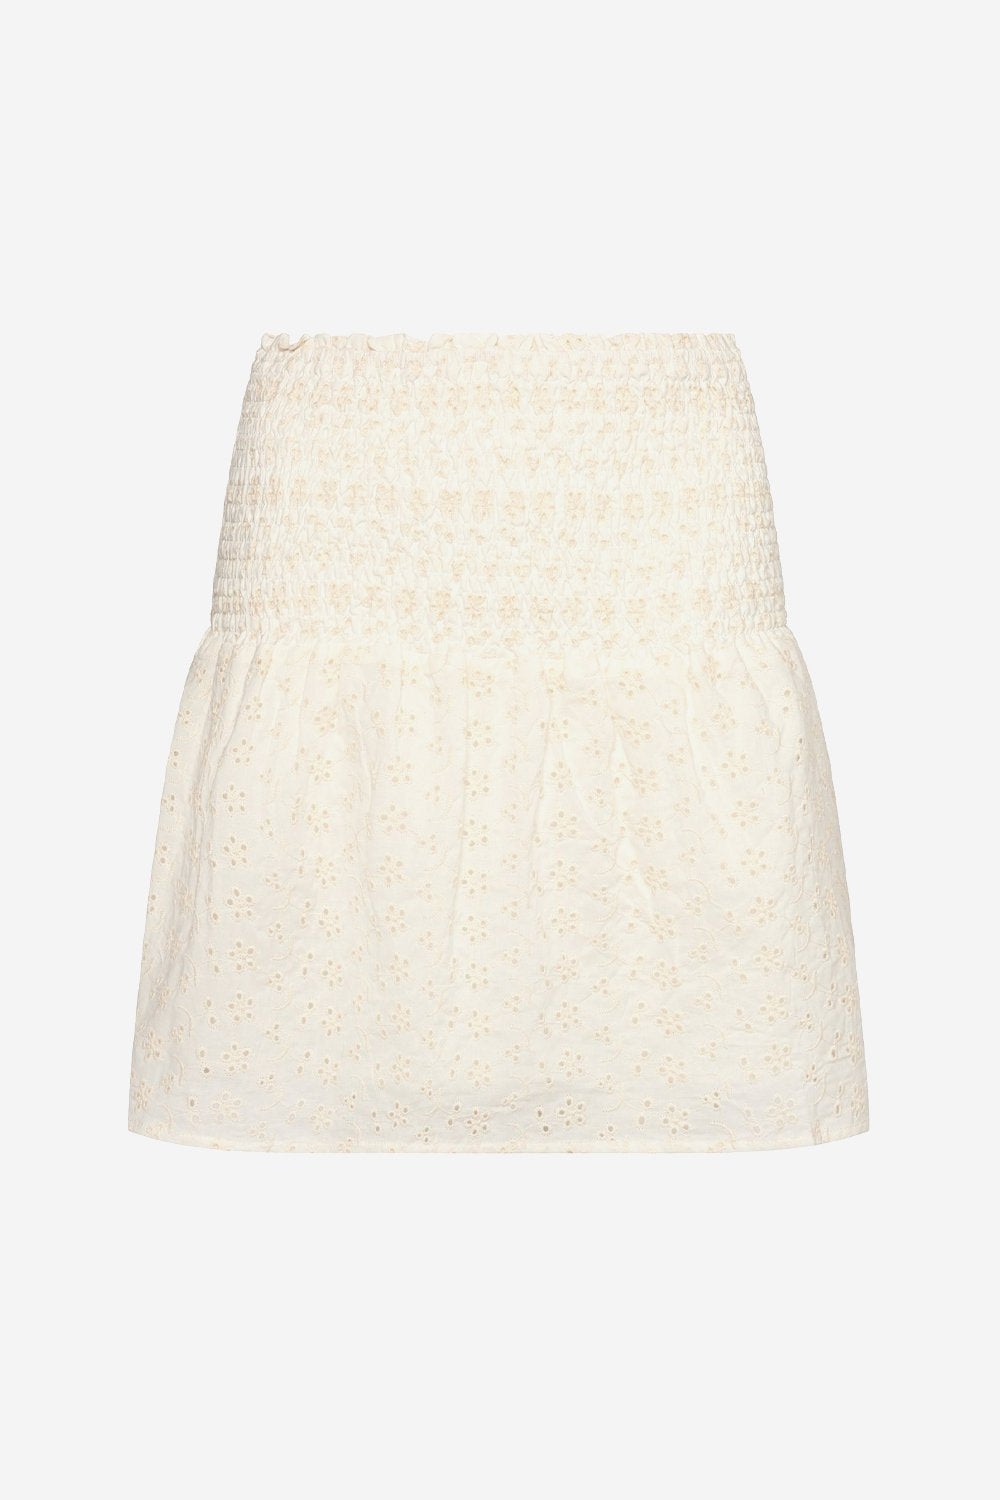 Blossom Skirt Cotton Broderie White